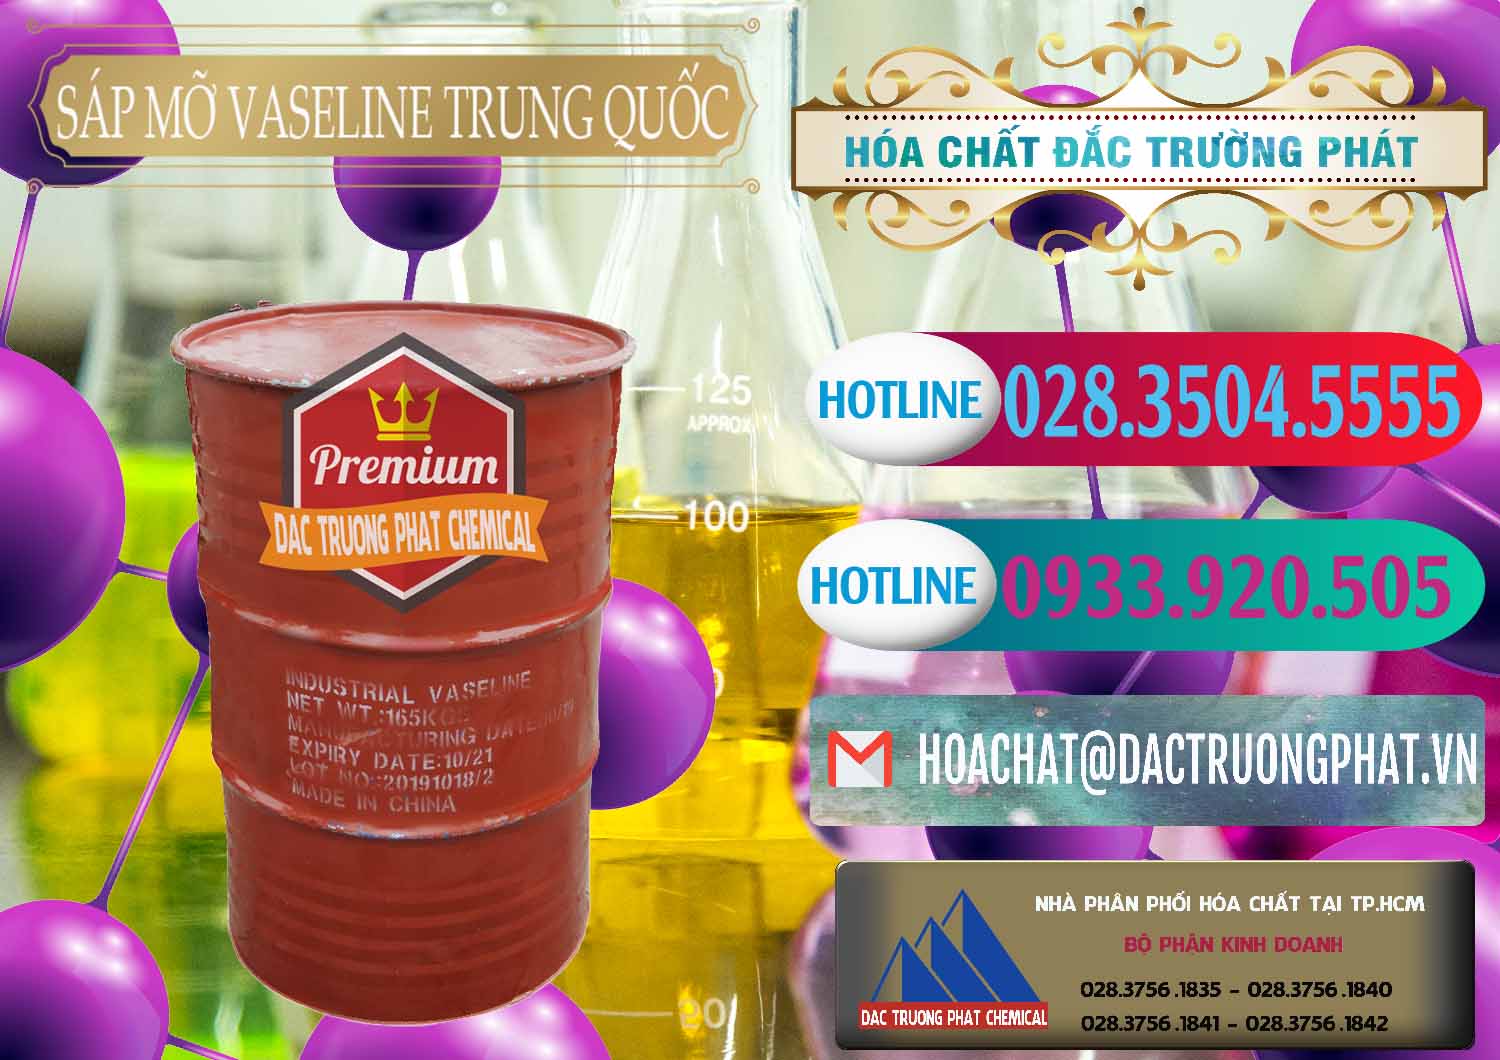 Bán - cung cấp Sáp Mỡ Vaseline Trung Quốc China - 0122 - Nơi phân phối & nhập khẩu hóa chất tại TP.HCM - truongphat.vn